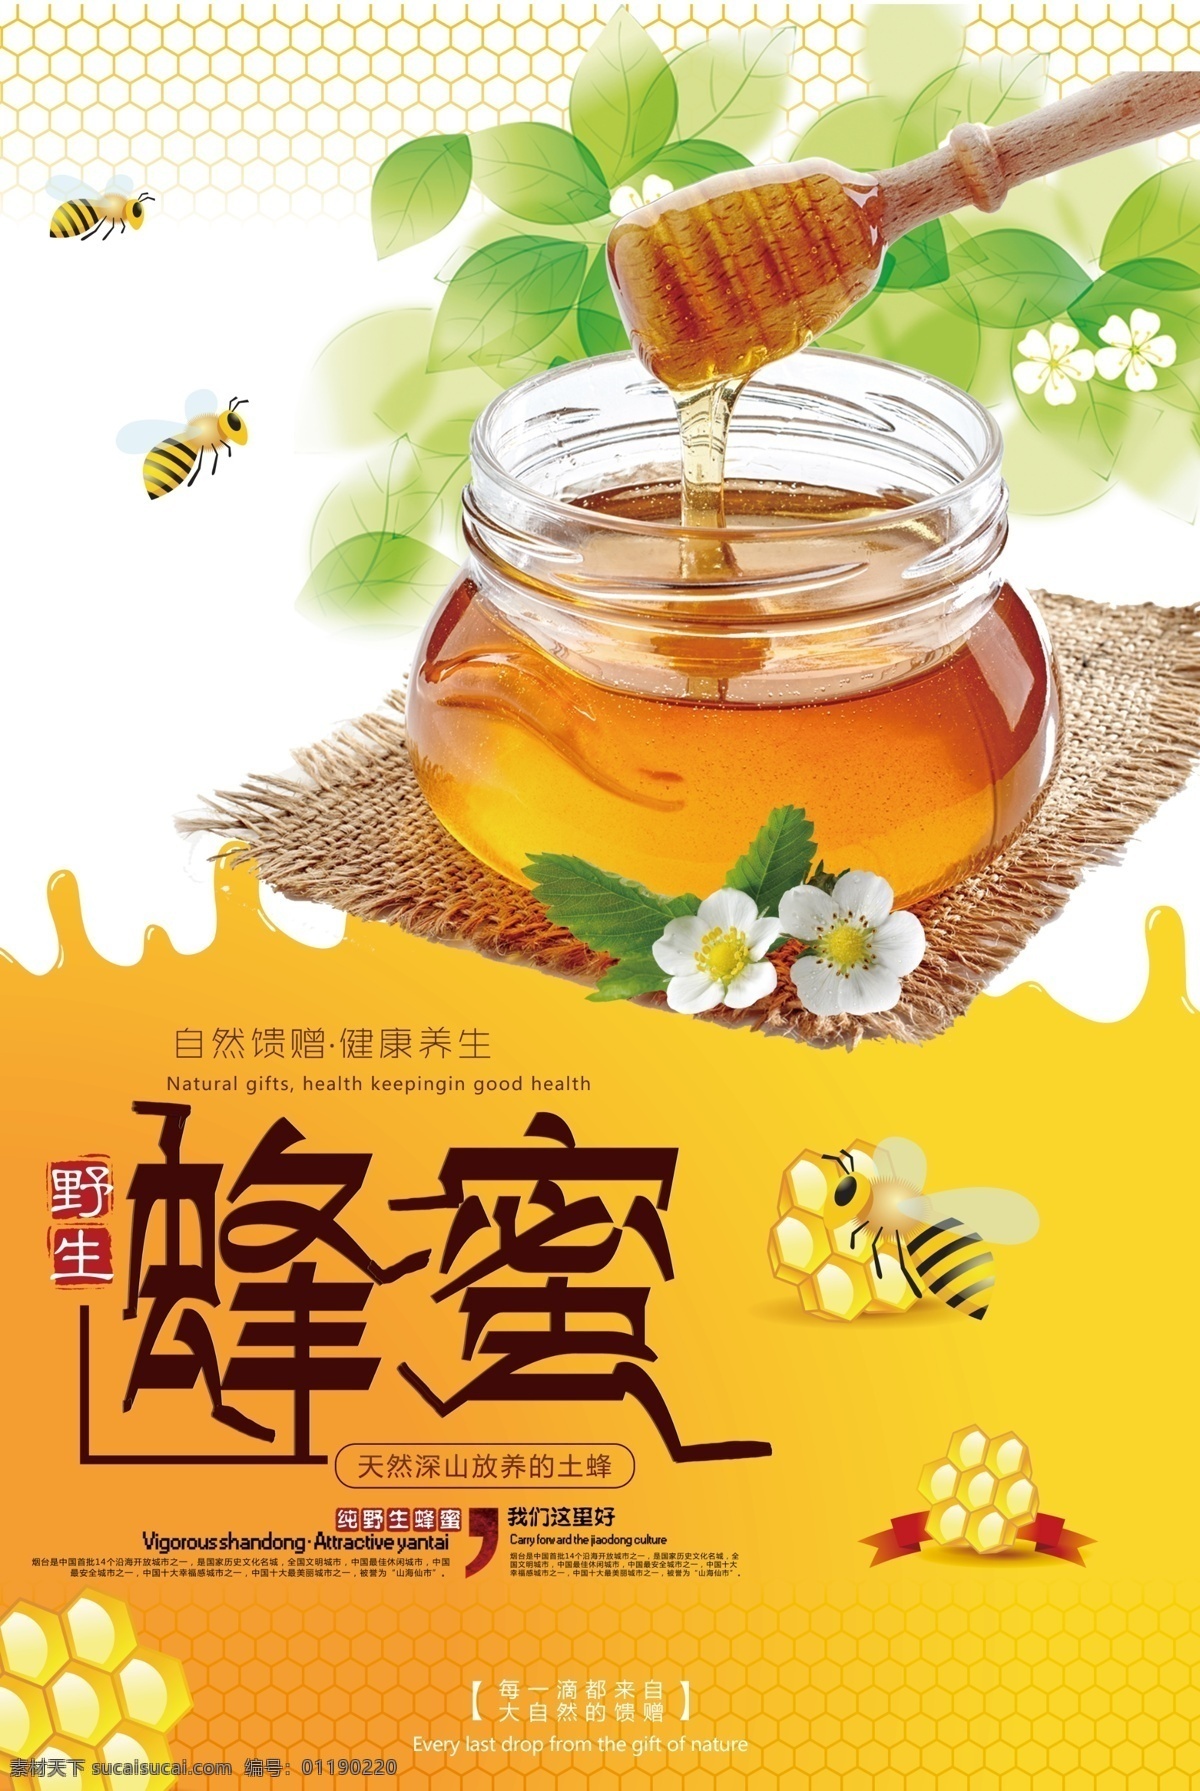 蜂蜜 促销 美食 海报 绿色 蜂蜜海报 蜂蜜广告 天然蜂蜜 进口蜂蜜 蜂蜜海报设计 纯天然蜂蜜 蜂蜜展板 蜂蜜模板 蜂蜜文化 蜂蜜图片 蜂蜜设计 蜂蜜产品 蜂蜜素材 野生蜂蜜 海报模版 psd美食 美食psd 平面素材